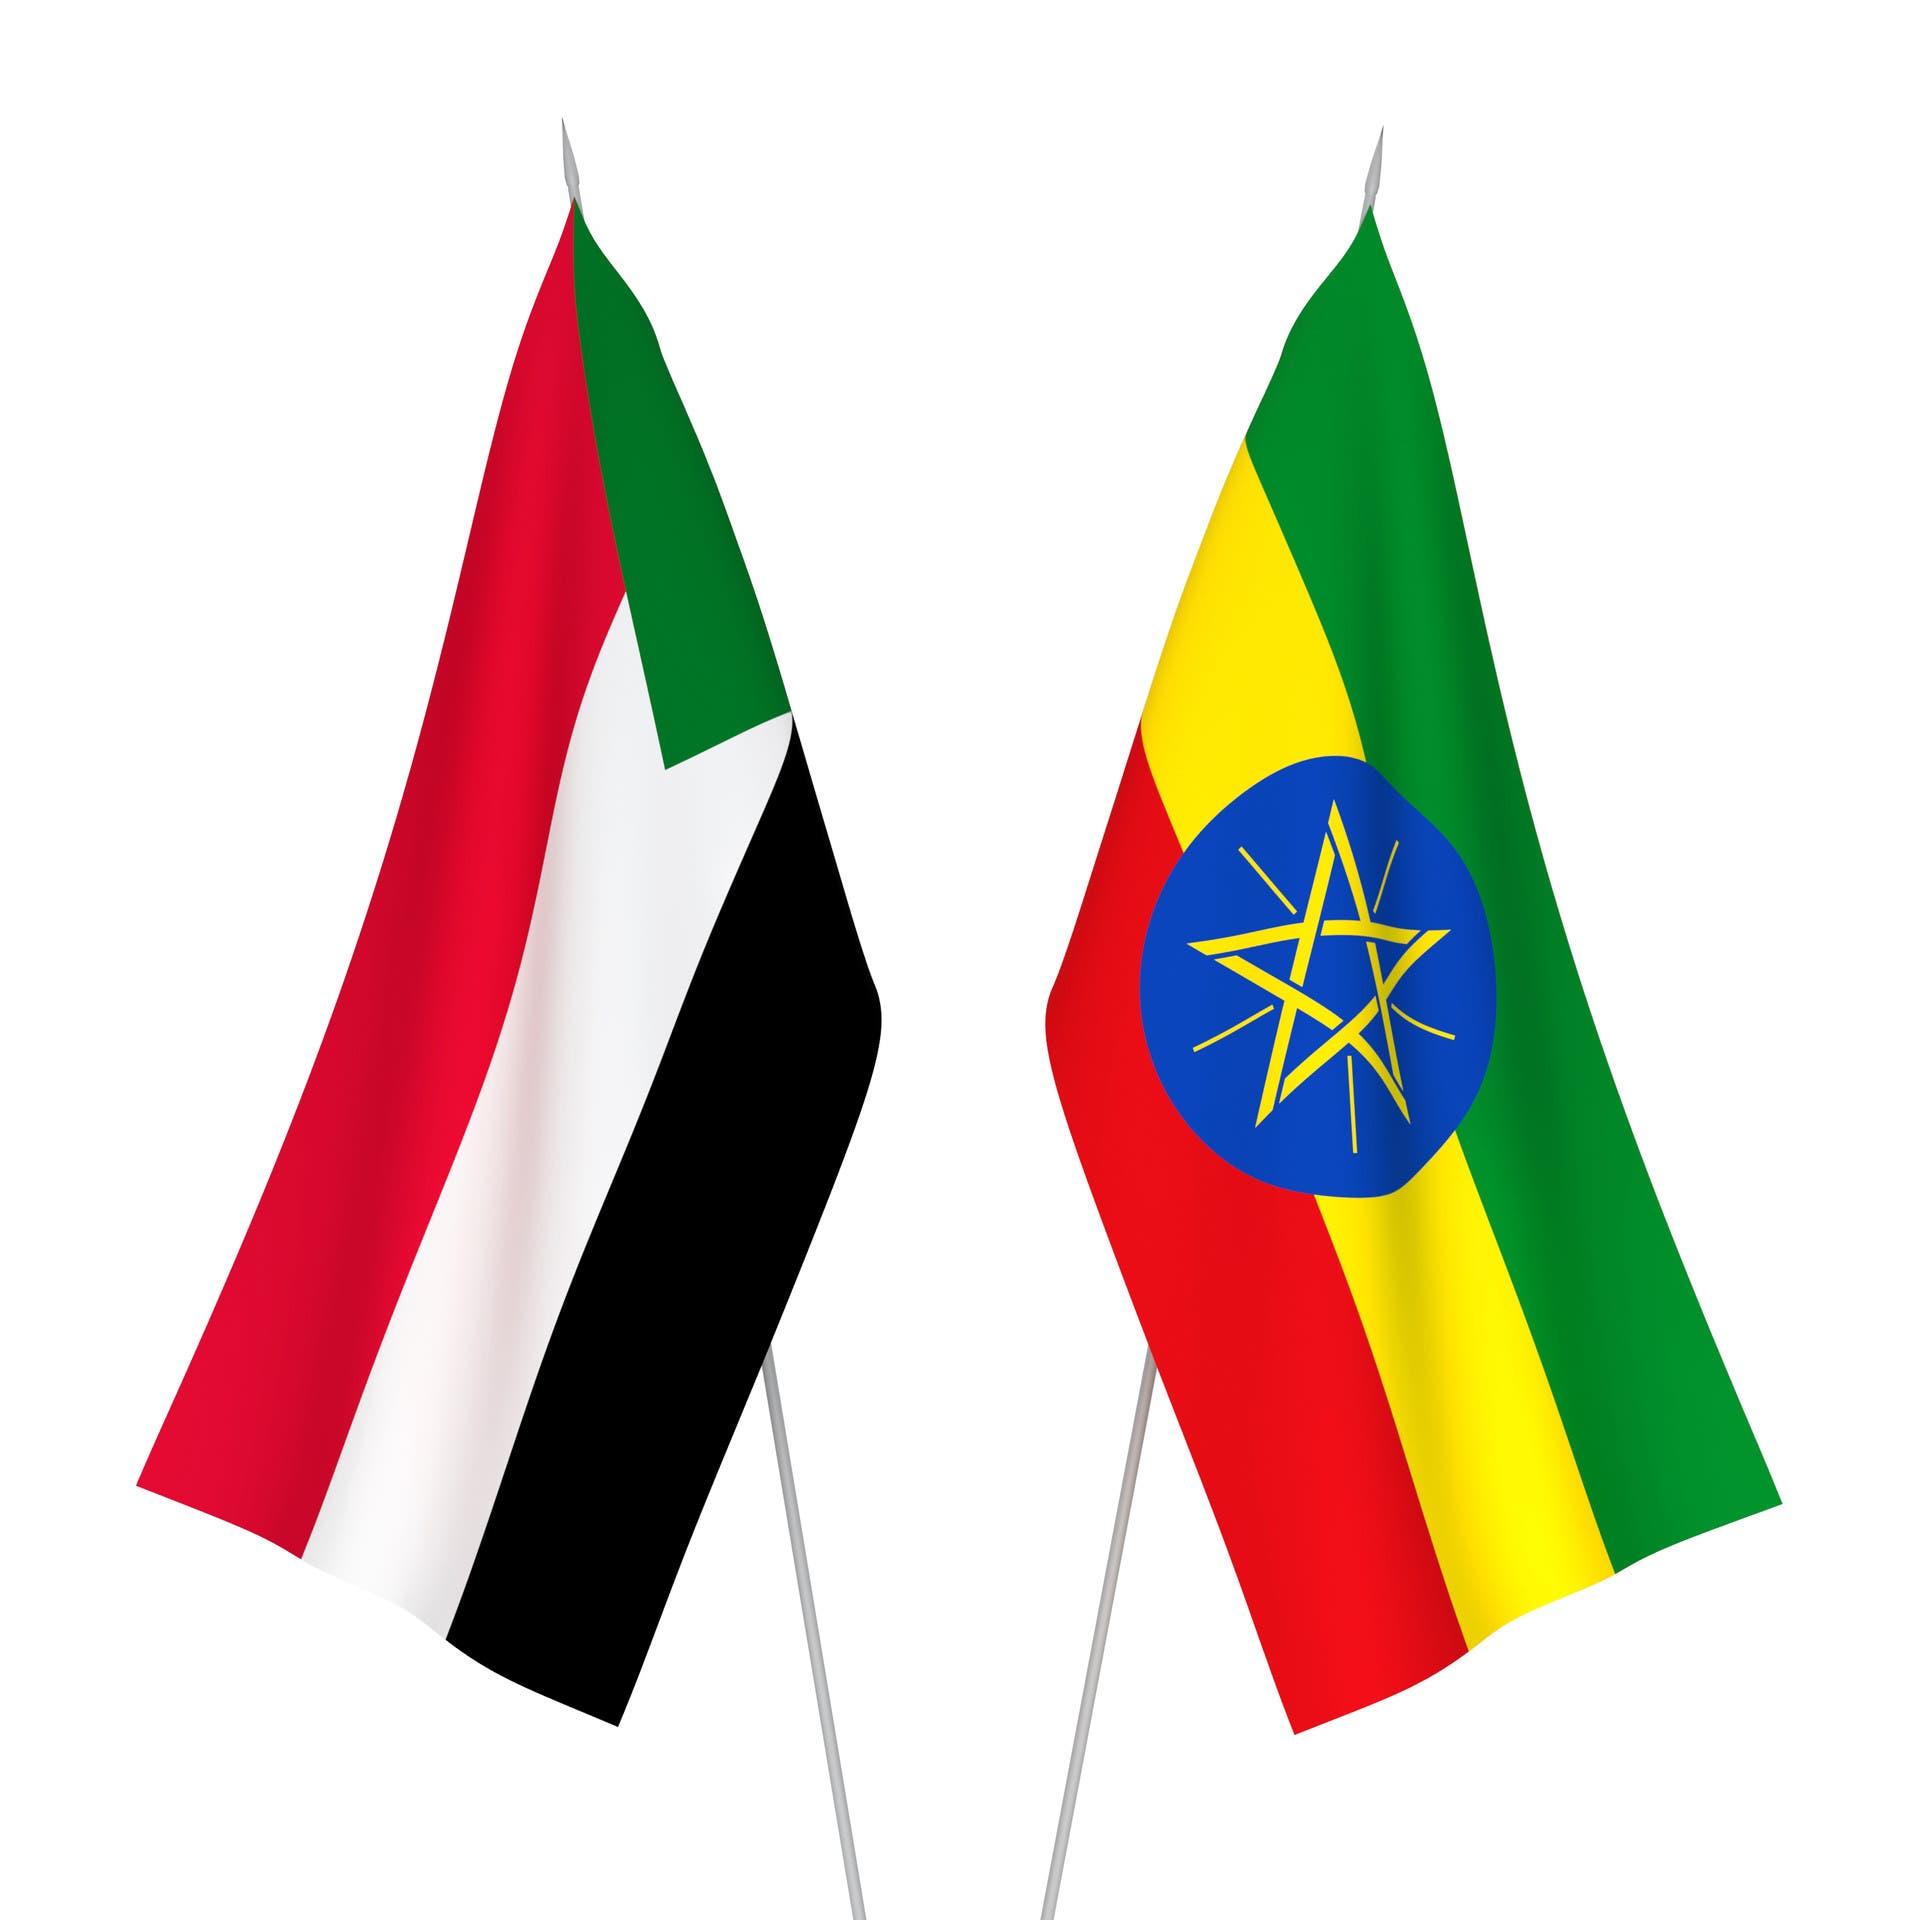 السودان: تصريحات إثيوبيا بتدريبنا معارضين والدفع بهم في تيغراي لا صحة لها